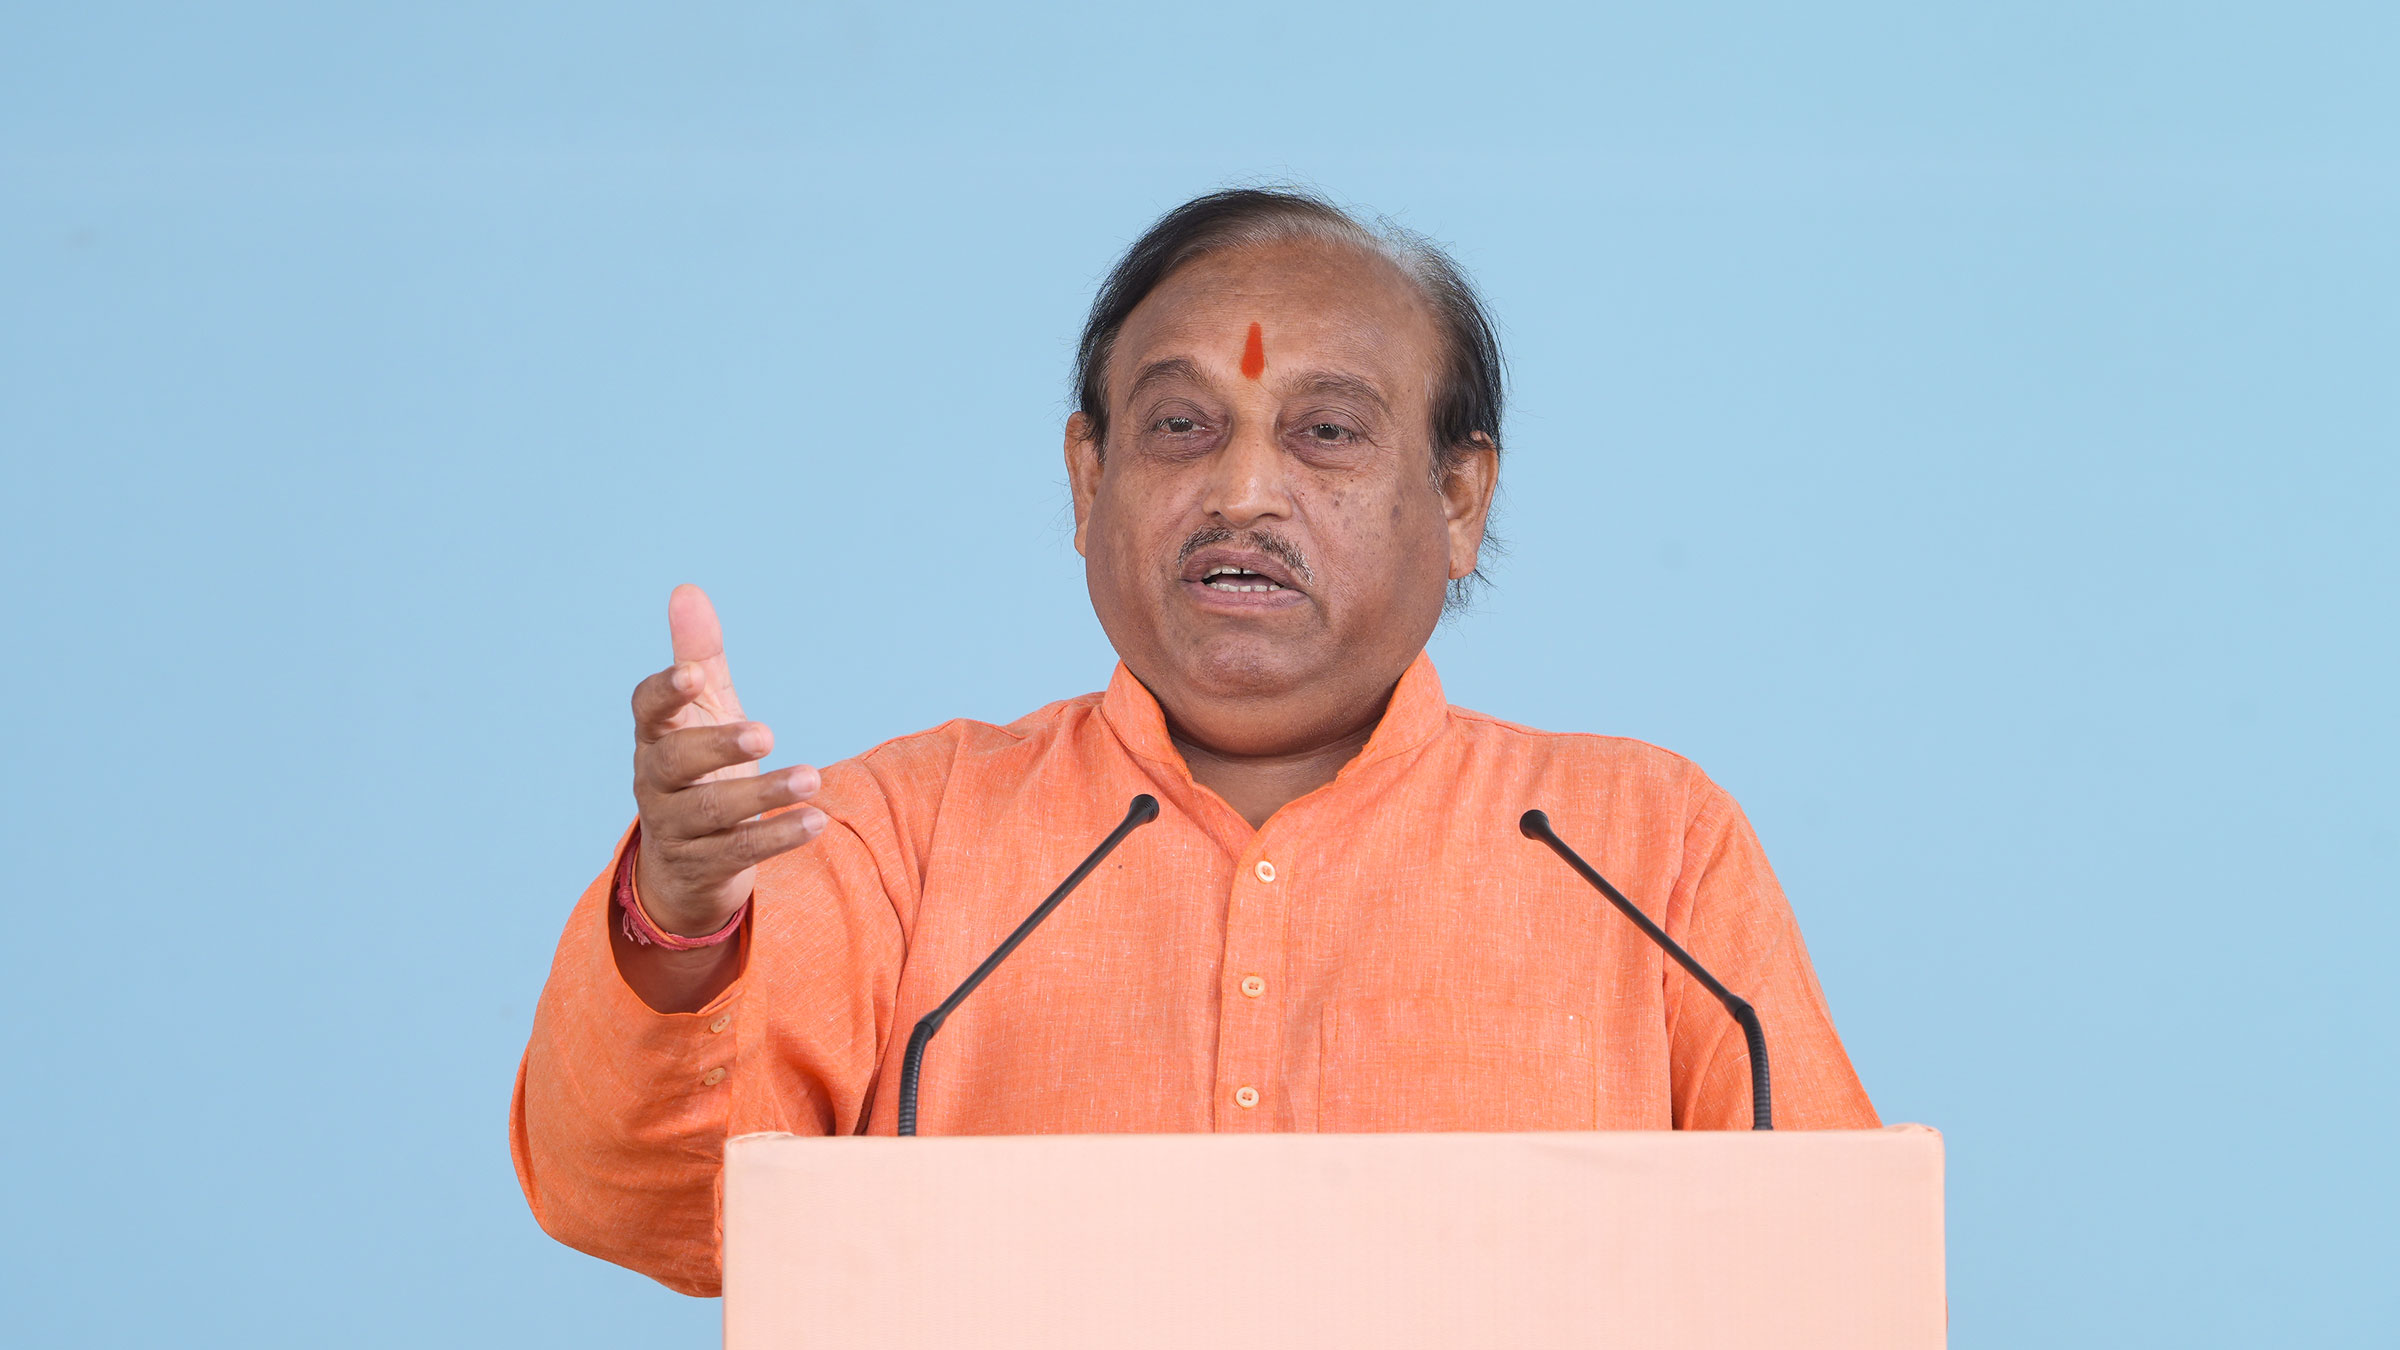 Munna Kumar Sharma, National President, Akhil Bharat Hindu Mahasabha, New Delhi